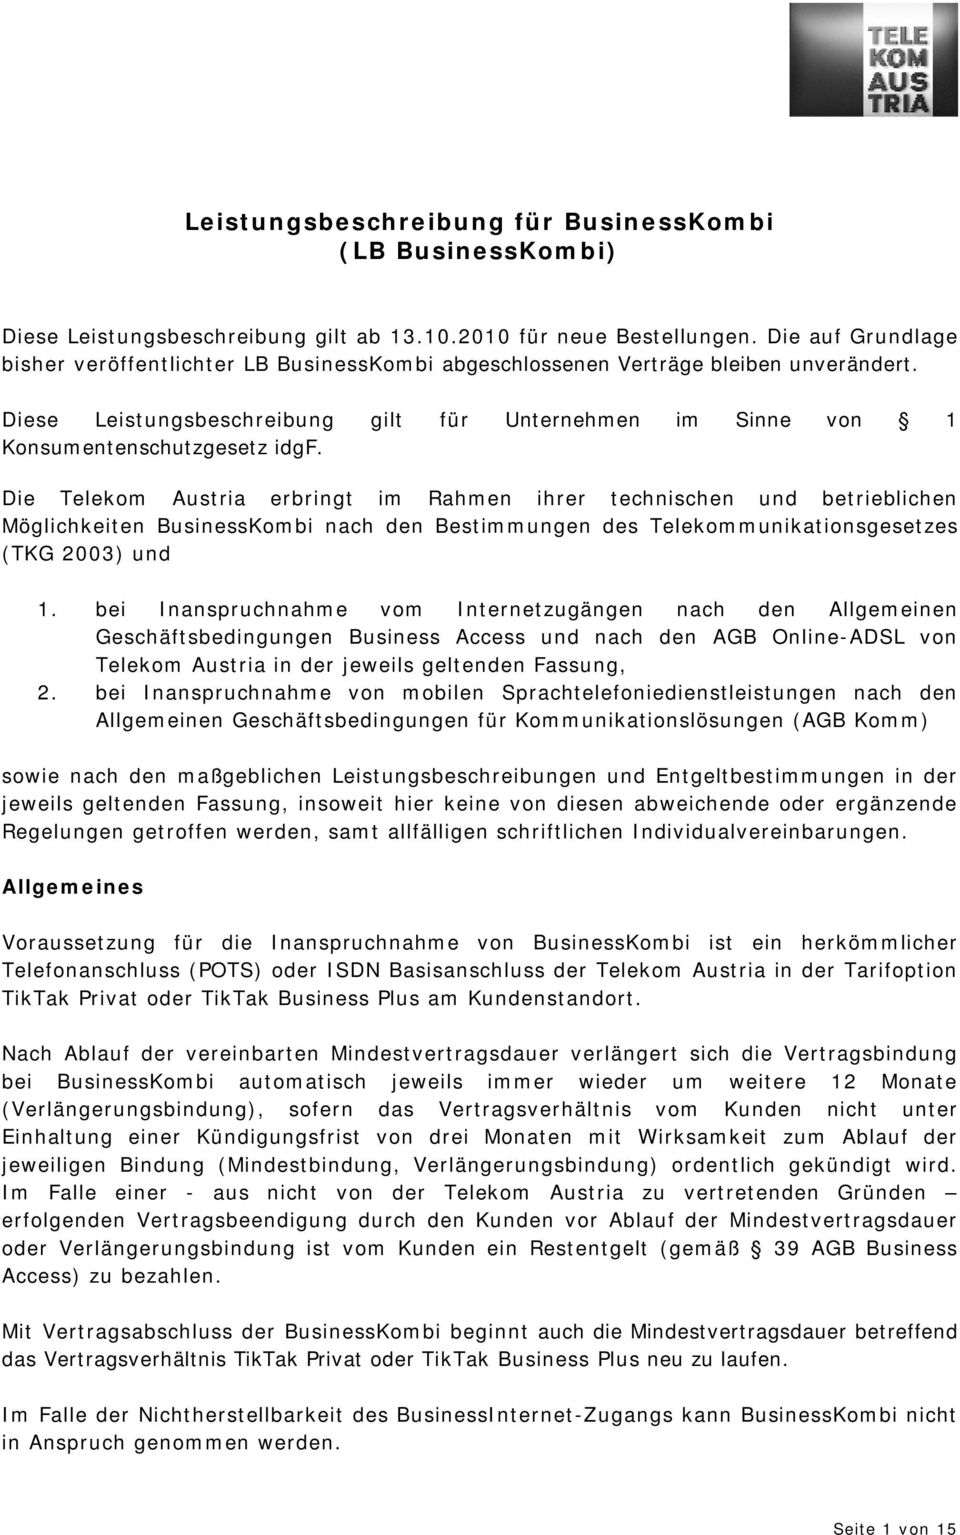 Die Telekom Austria erbringt im Rahmen ihrer technischen und betrieblichen Möglichkeiten BusinessKombi nach den Bestimmungen des Telekommunikationsgesetzes (TKG 2003) und 1.